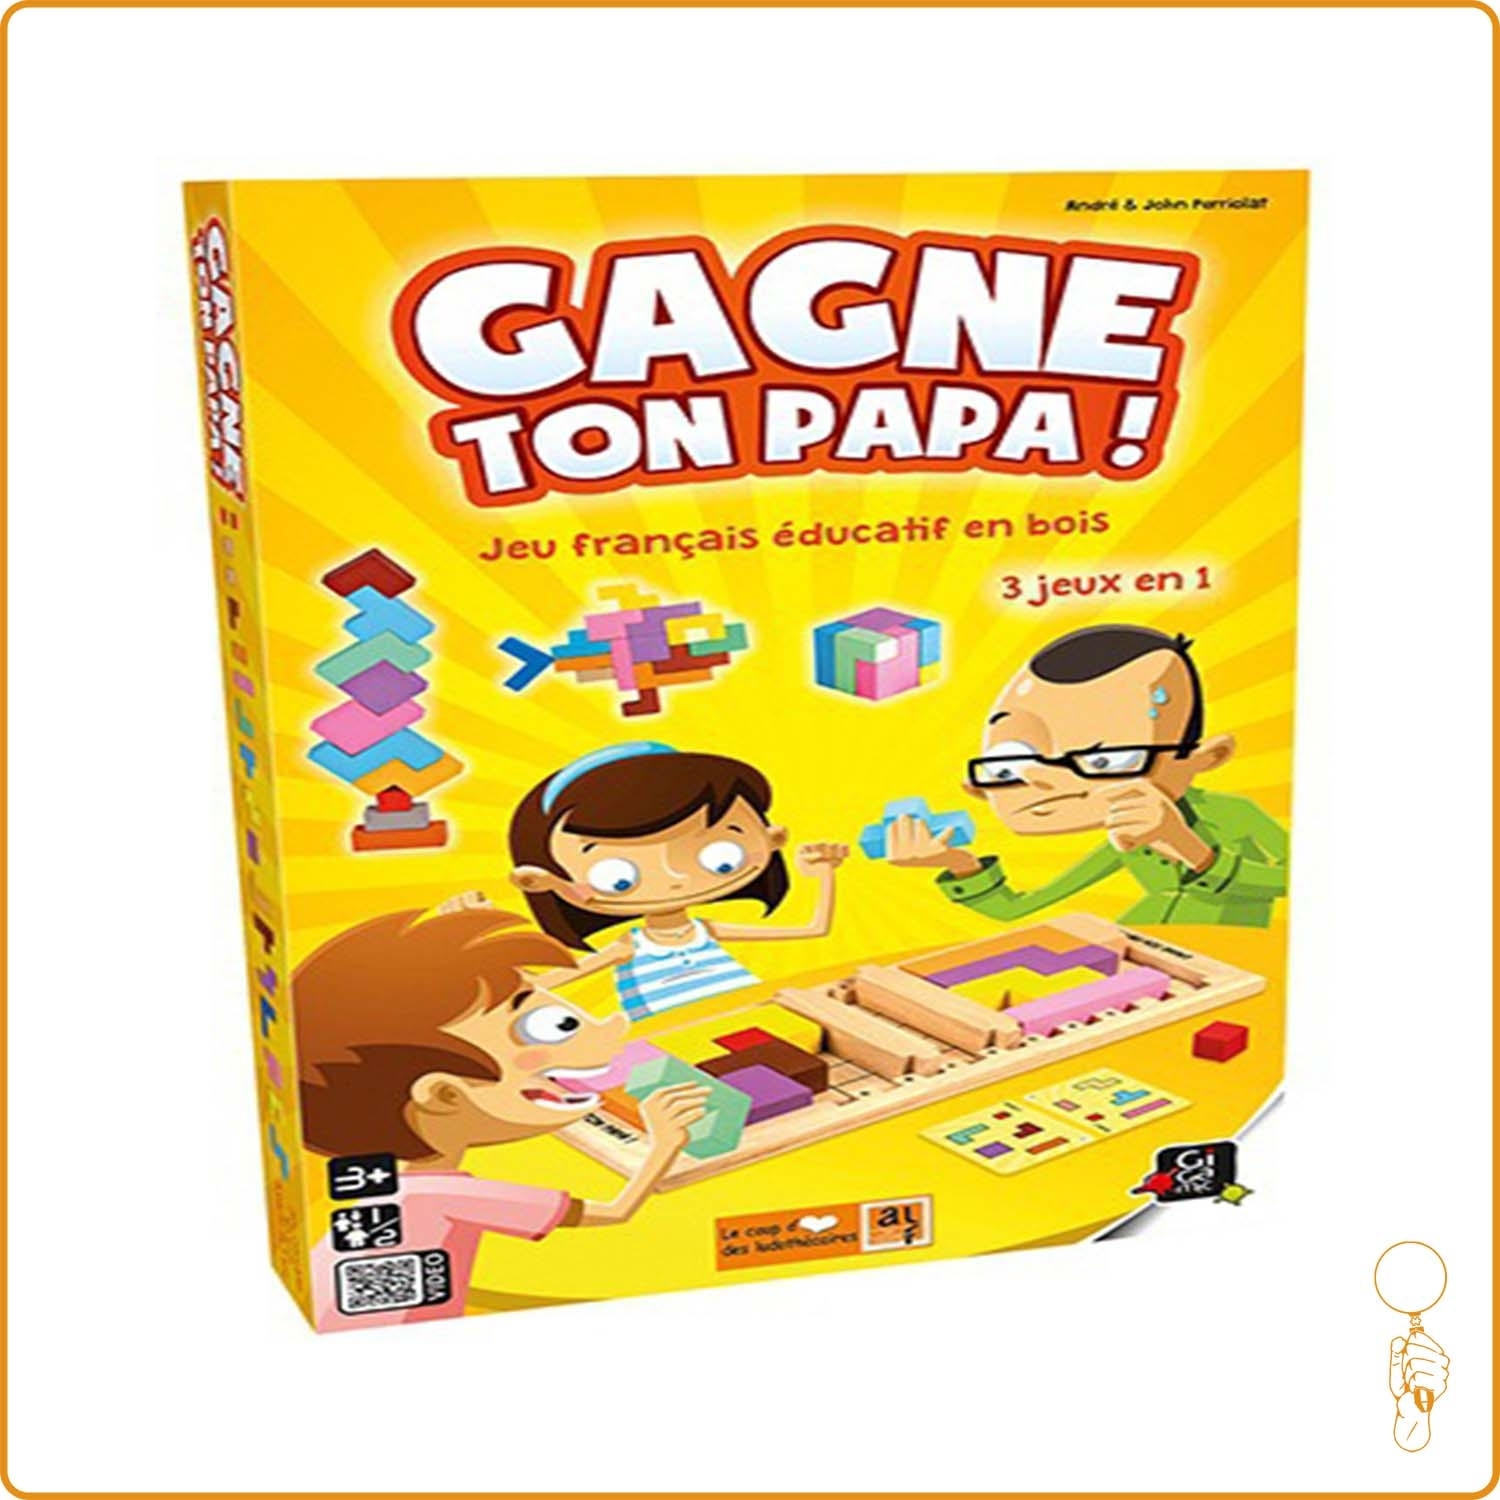 Gagne ton papa - jeu educatif - jeu Gigamic